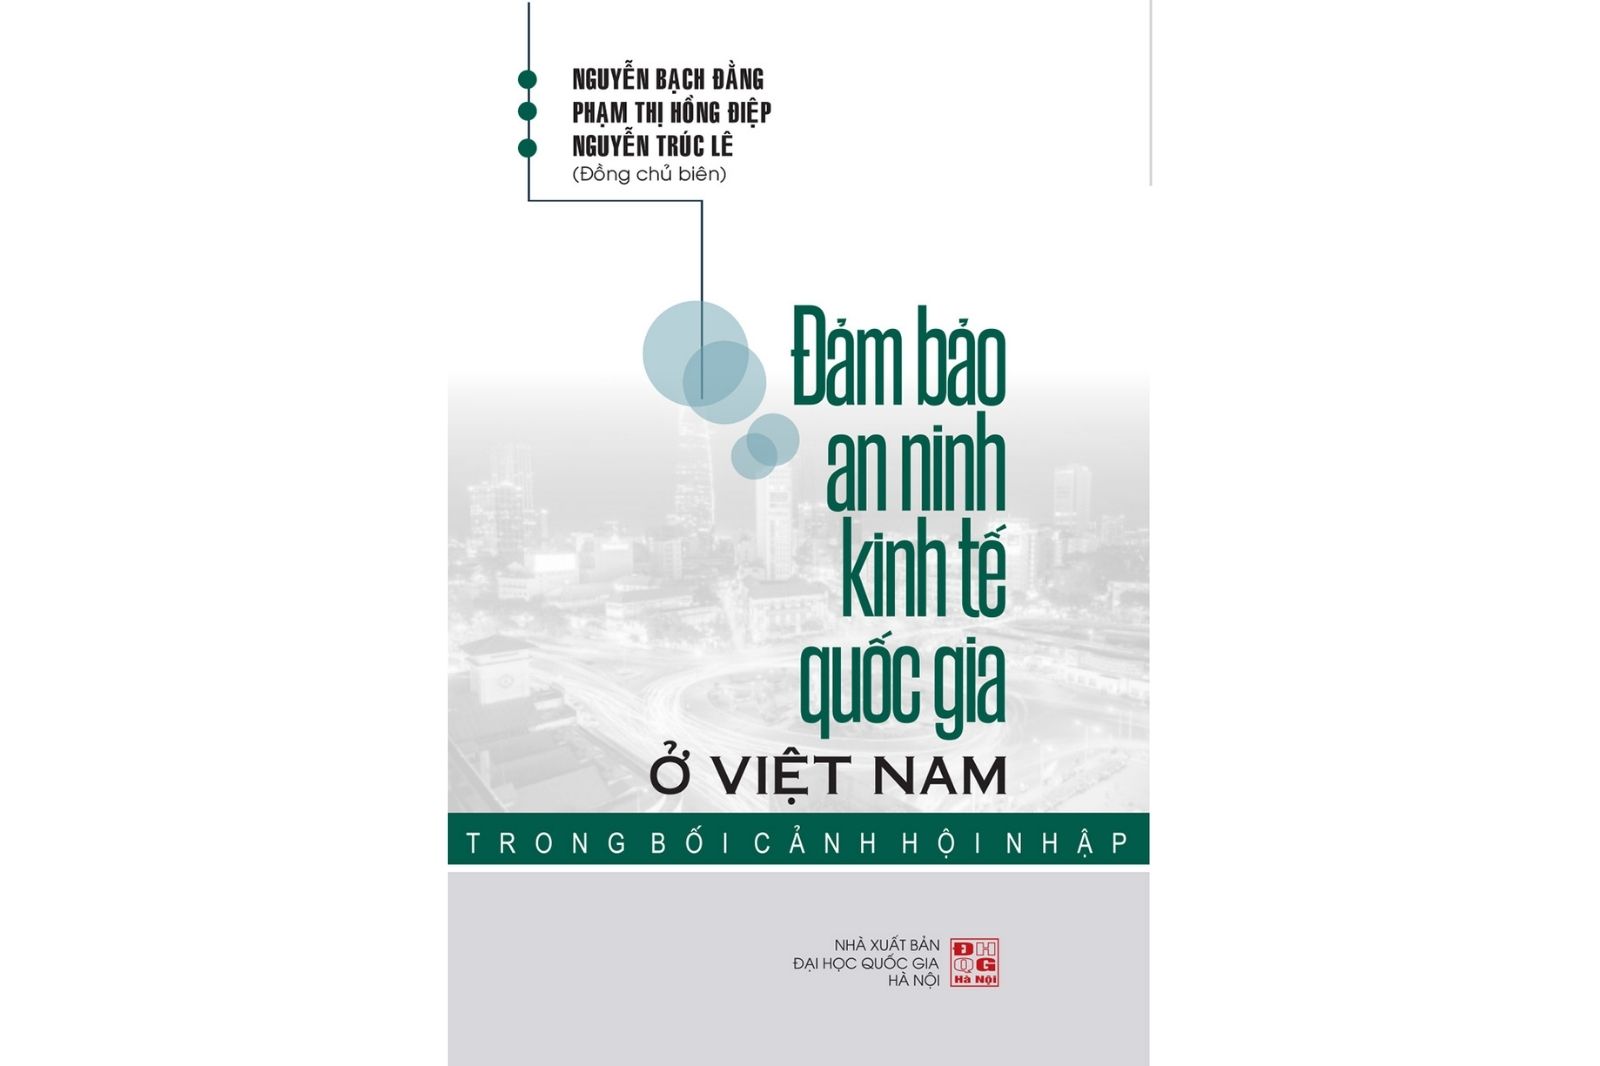 Đảm bảo an ninh kinh tế quốc gia ở Việt Nam trong bối cảnh hội nhập